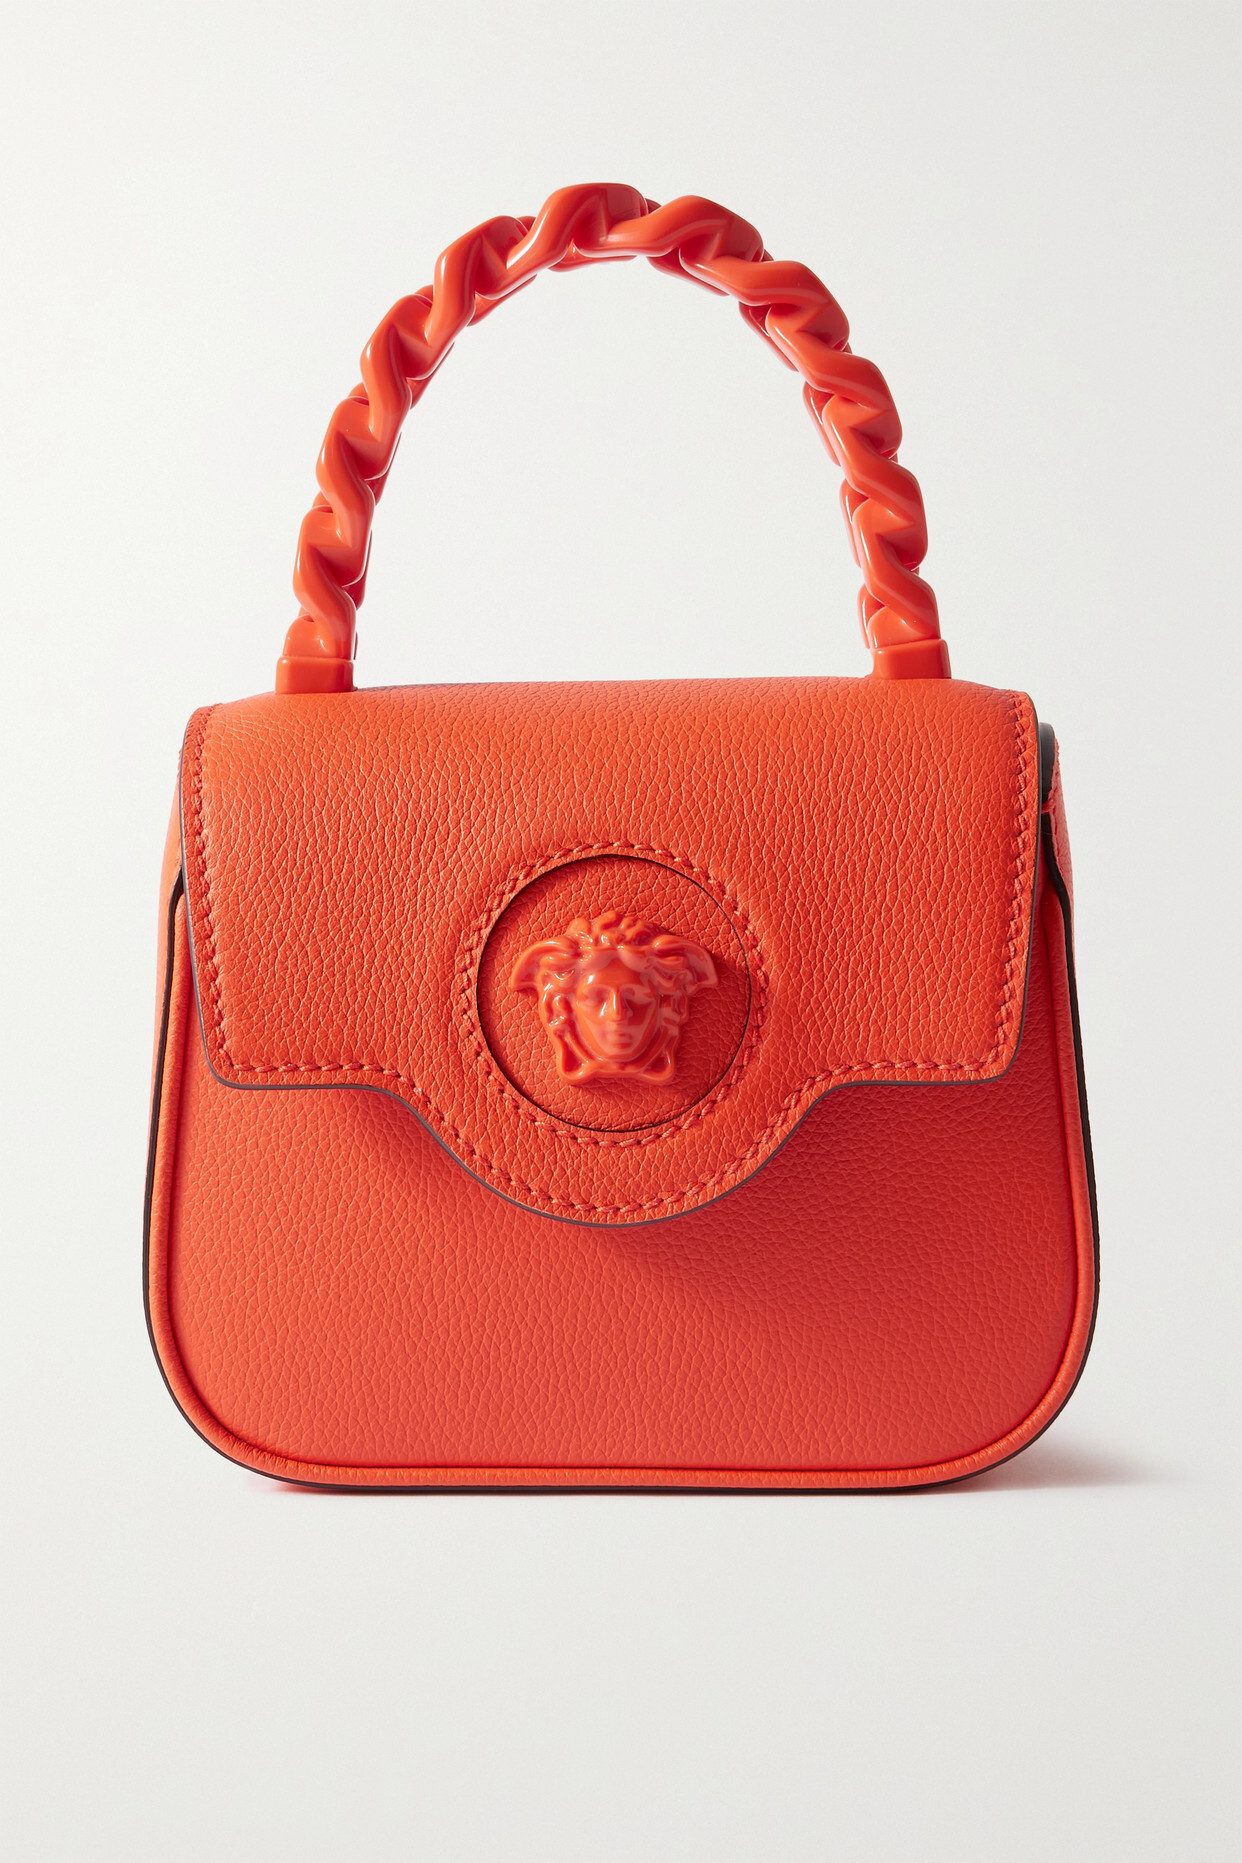 Versace - La Medusa Mini Textured-leather Tote - Orange